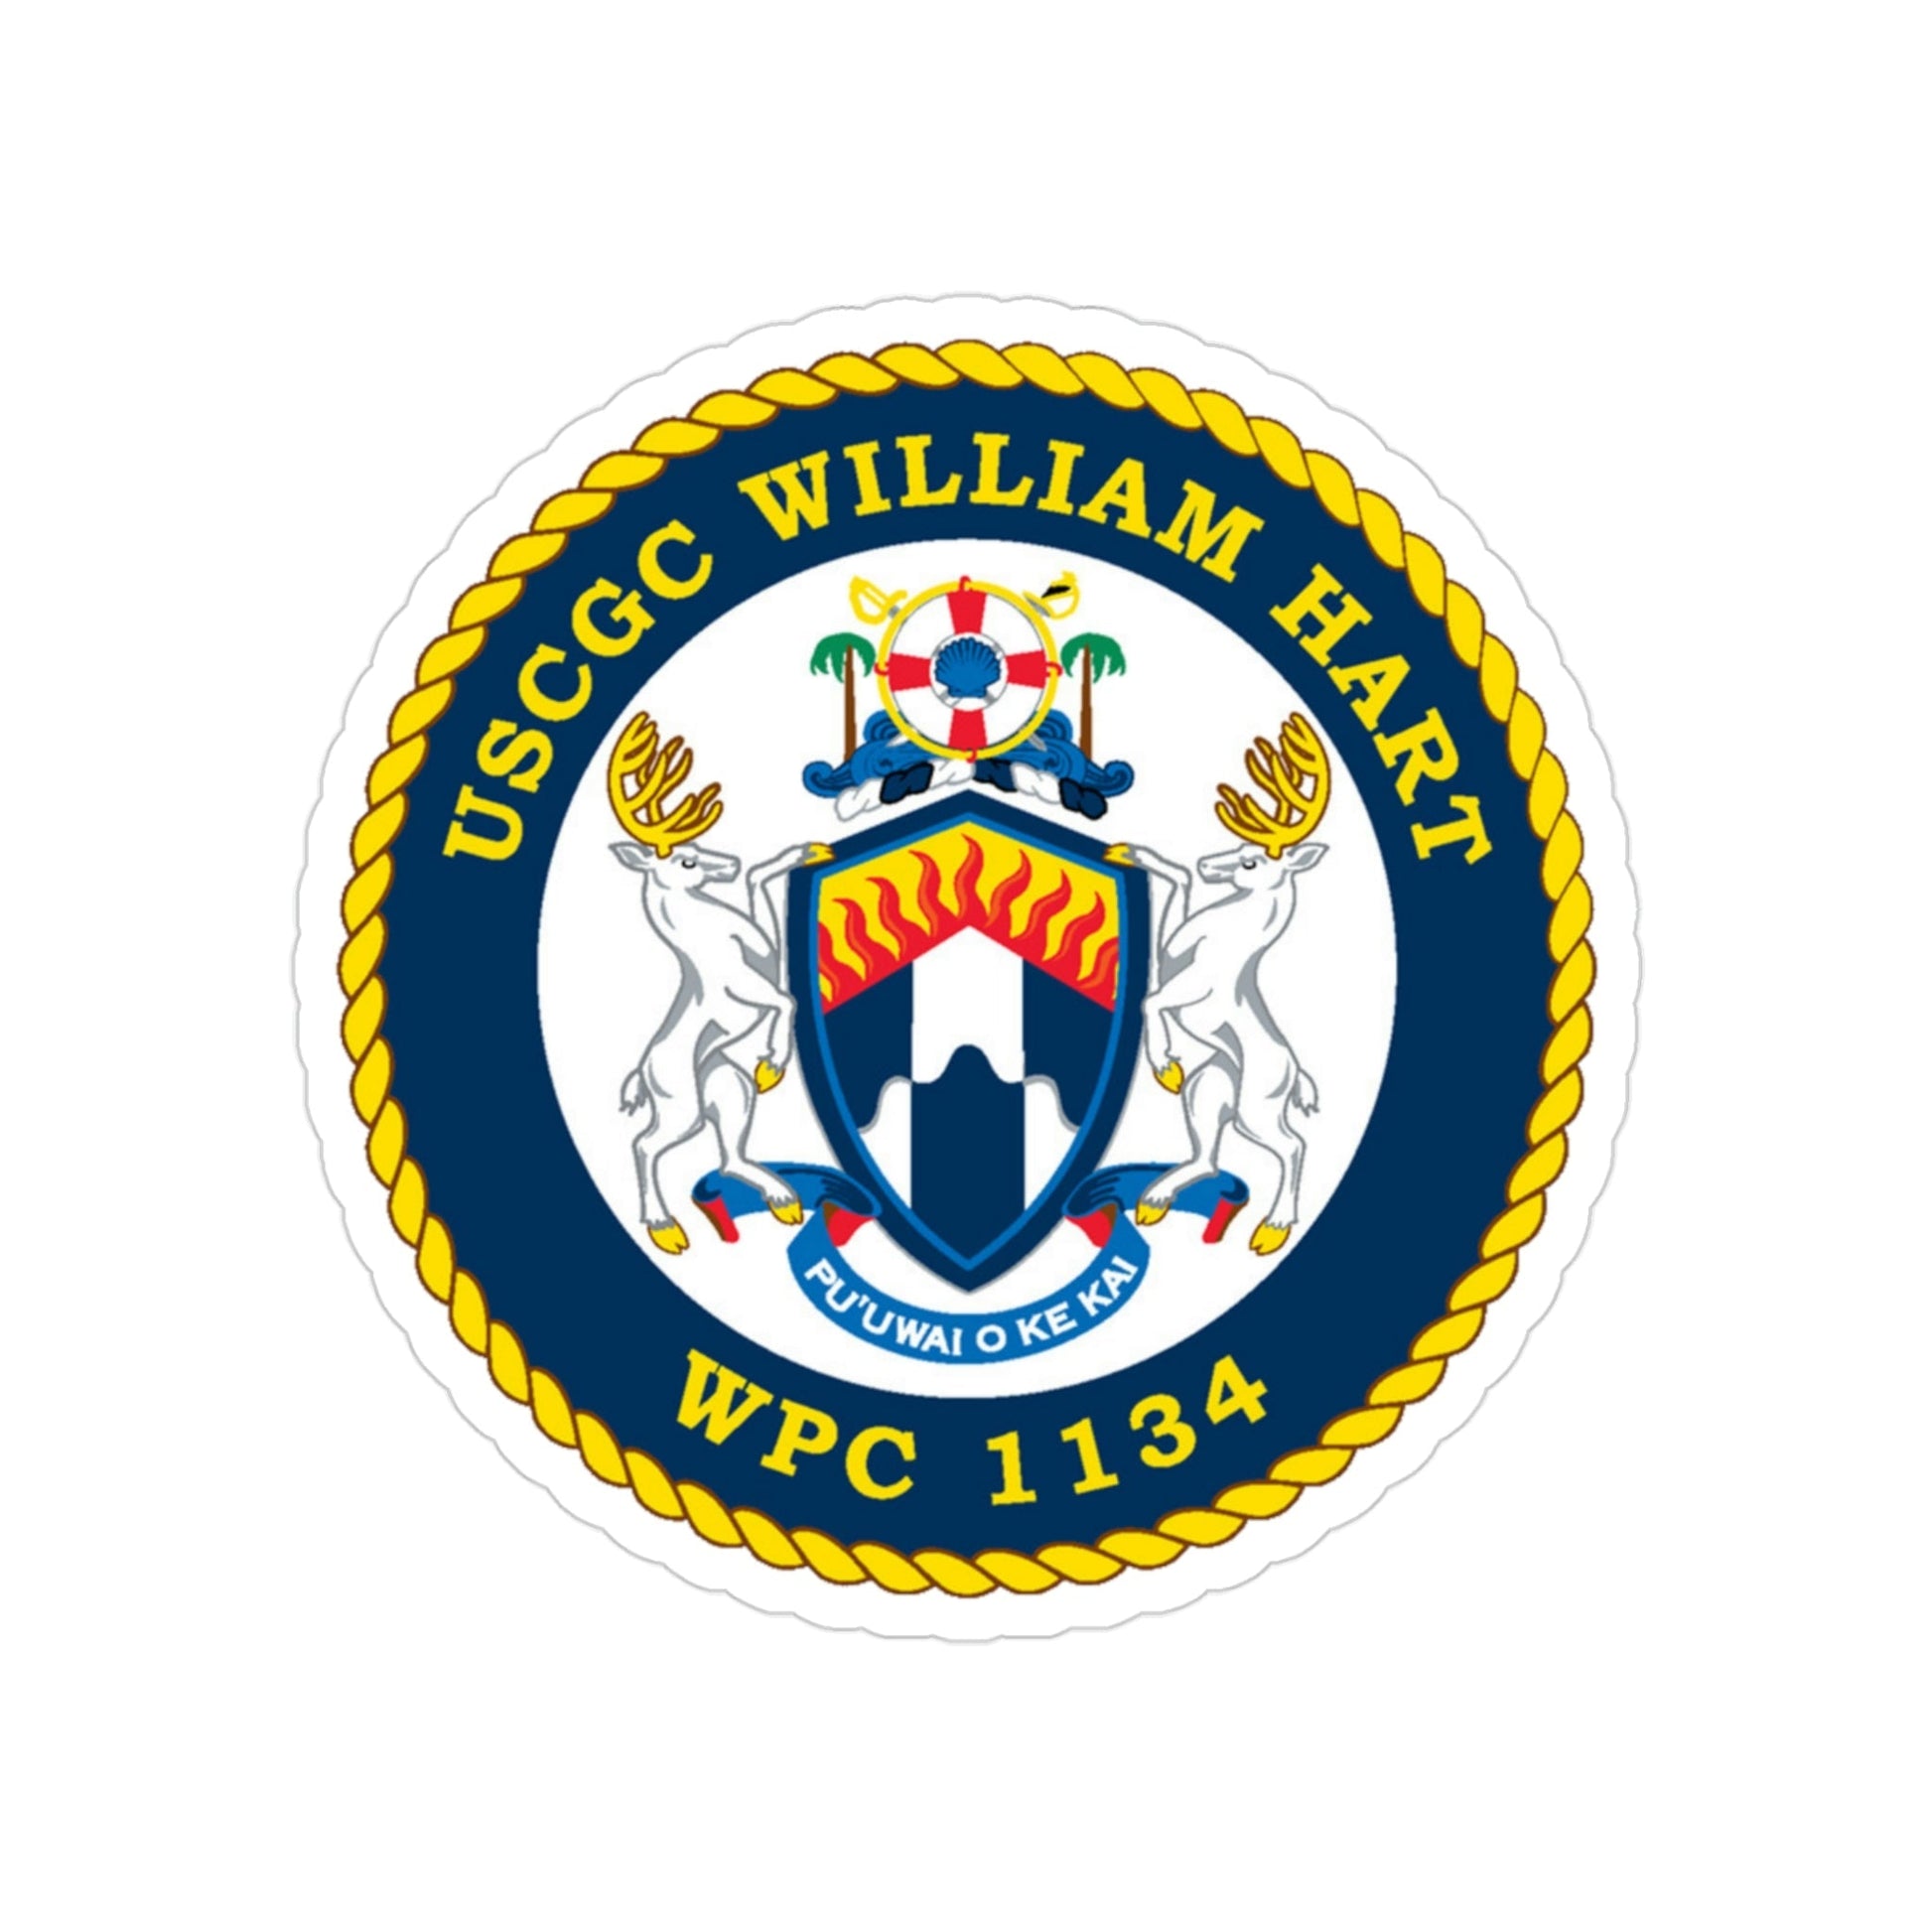 USCG C William Hart WPC 1134 (U.S. Coast Guard) Transparent STICKER Die-Cut Vinyl Decal-3 Inch-The Sticker Space